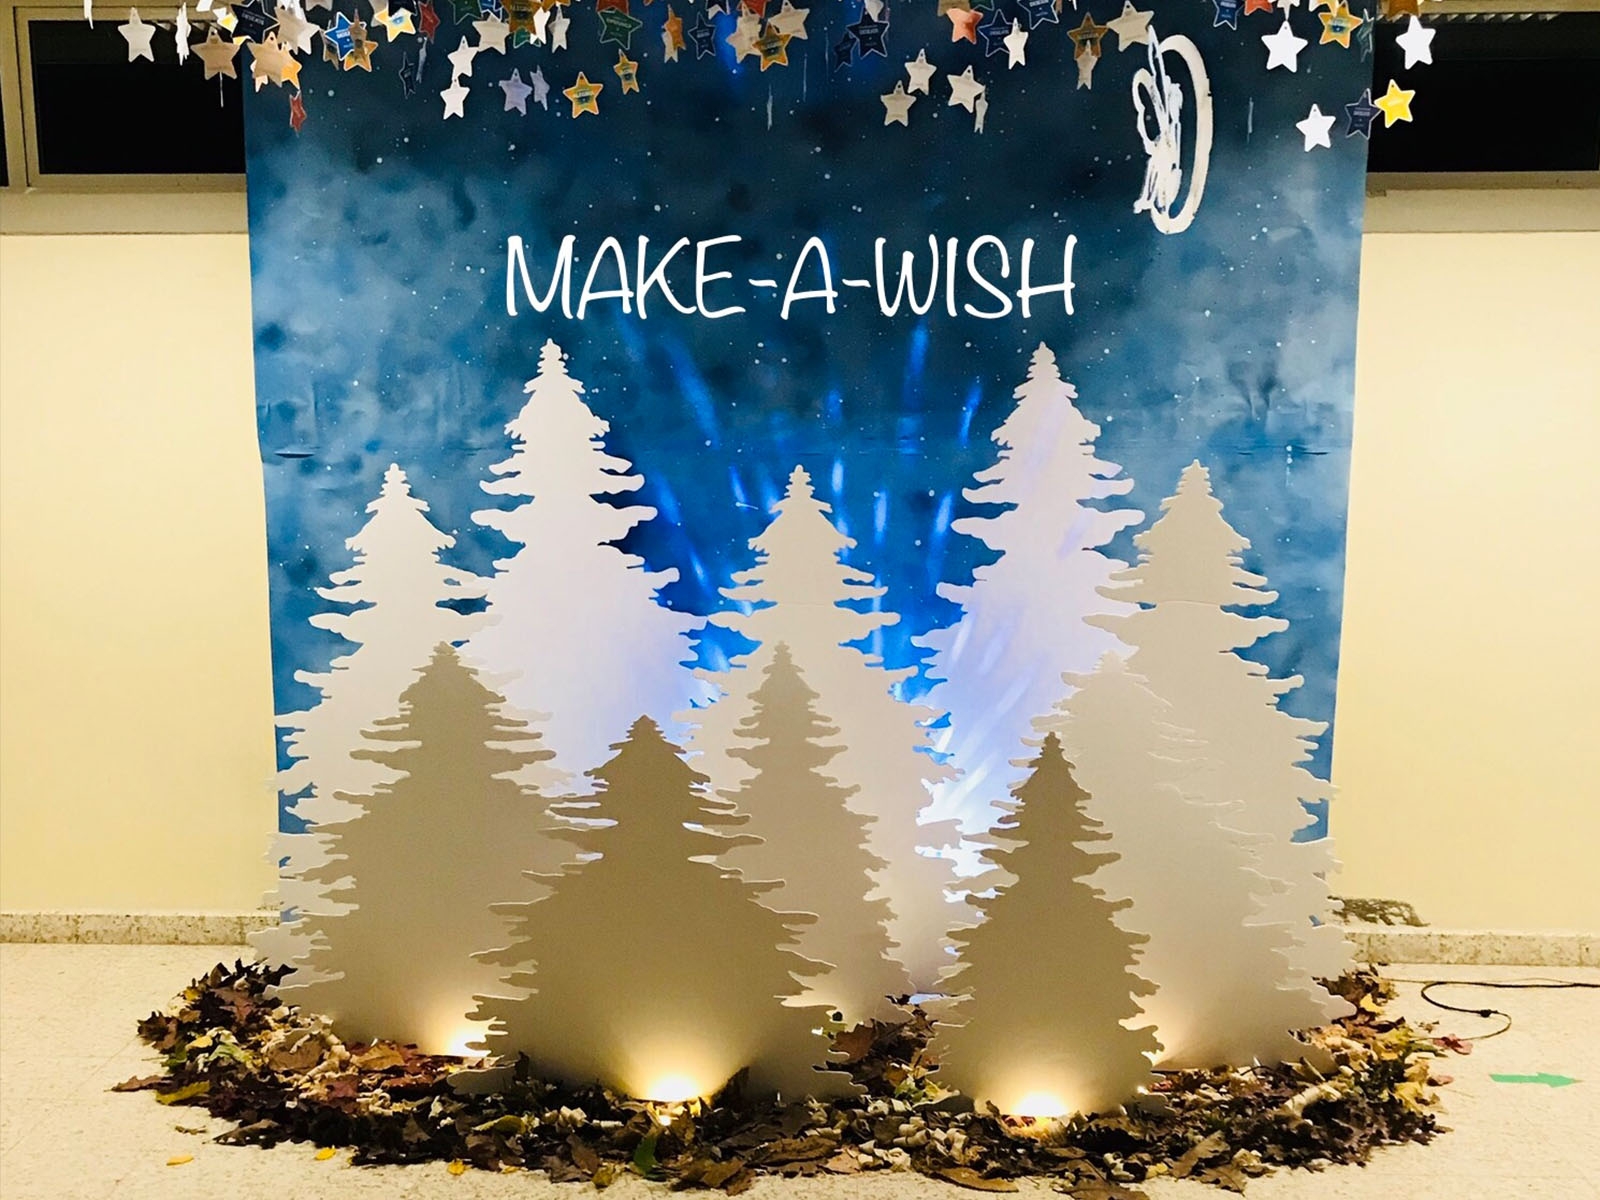 Projeto integrador 3ºB - 6º Concurso de Decoração de Natal Make-a-Wish